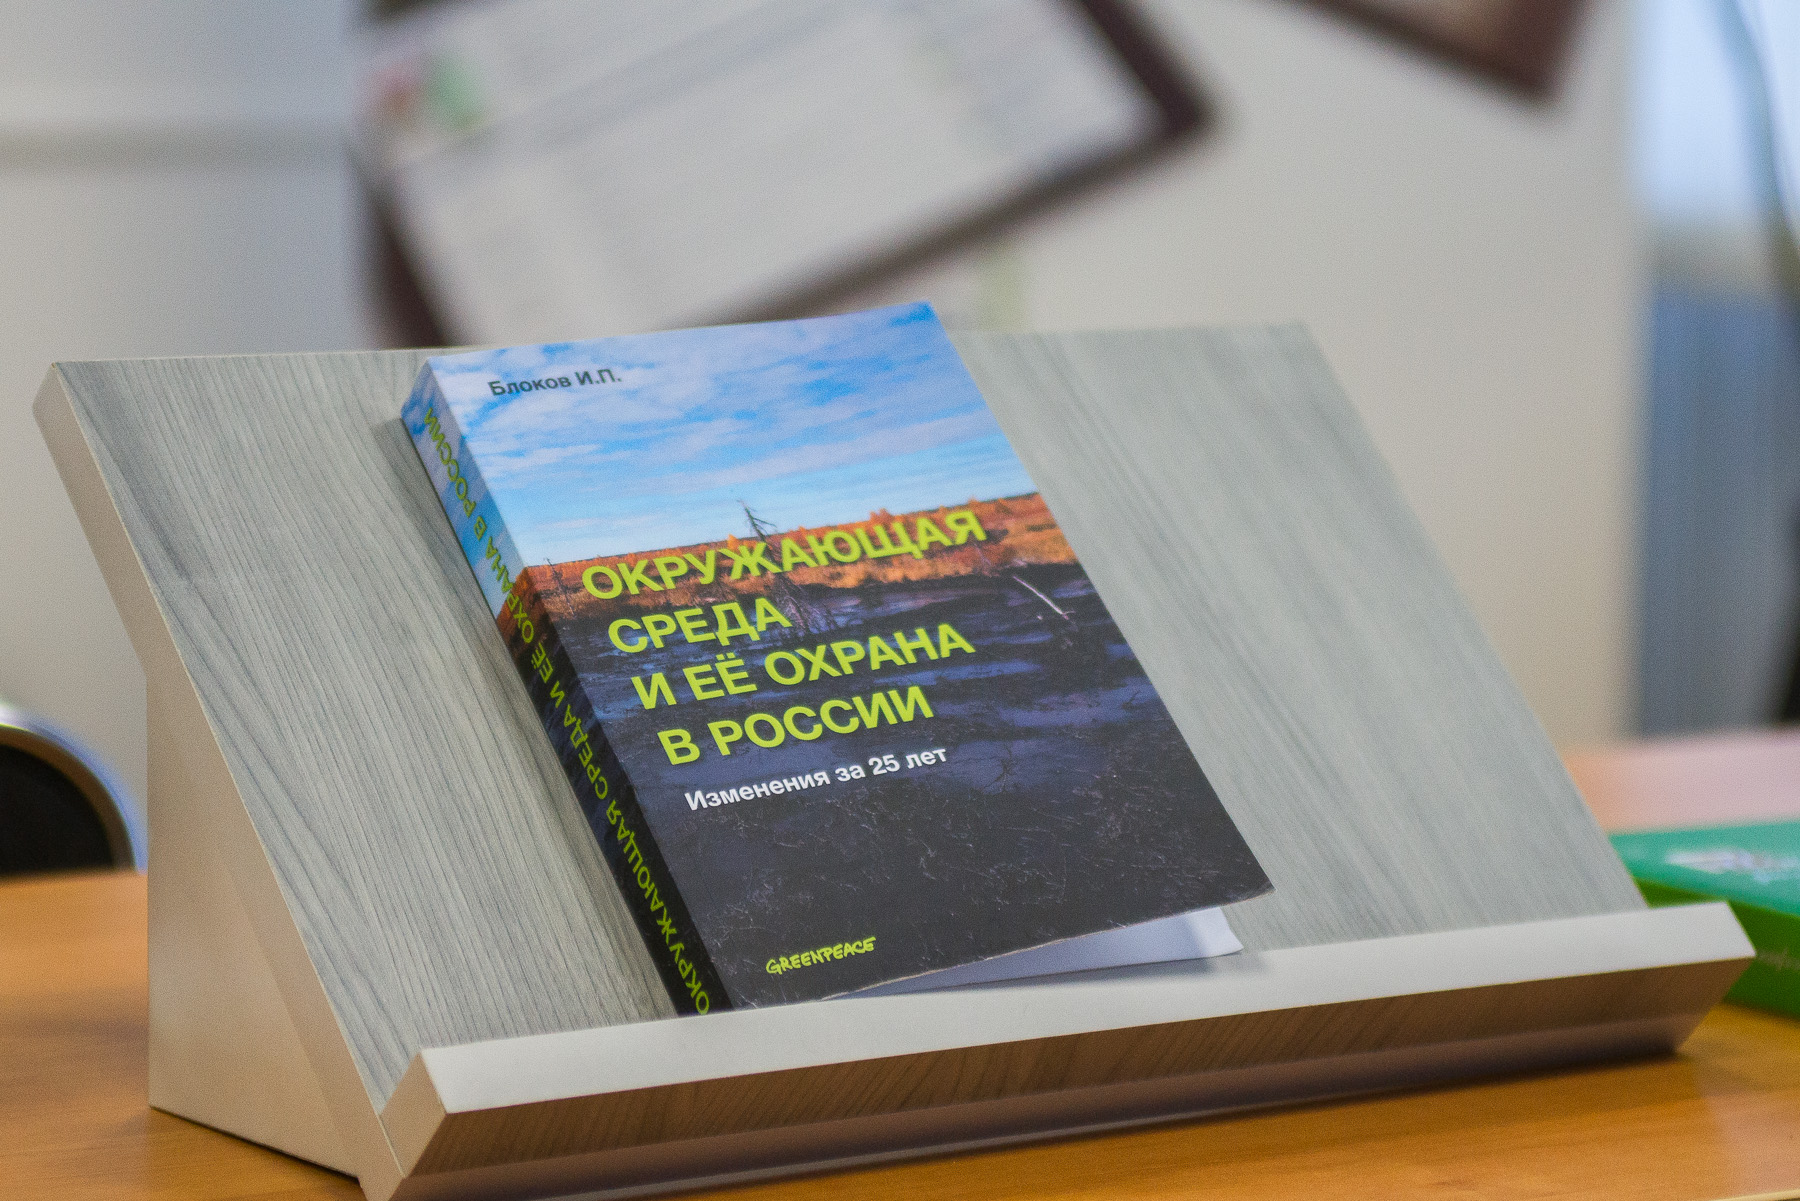 Книга Ивана Блокова «Окружающая среда и её охрана в России. Изменения за 25 лет»